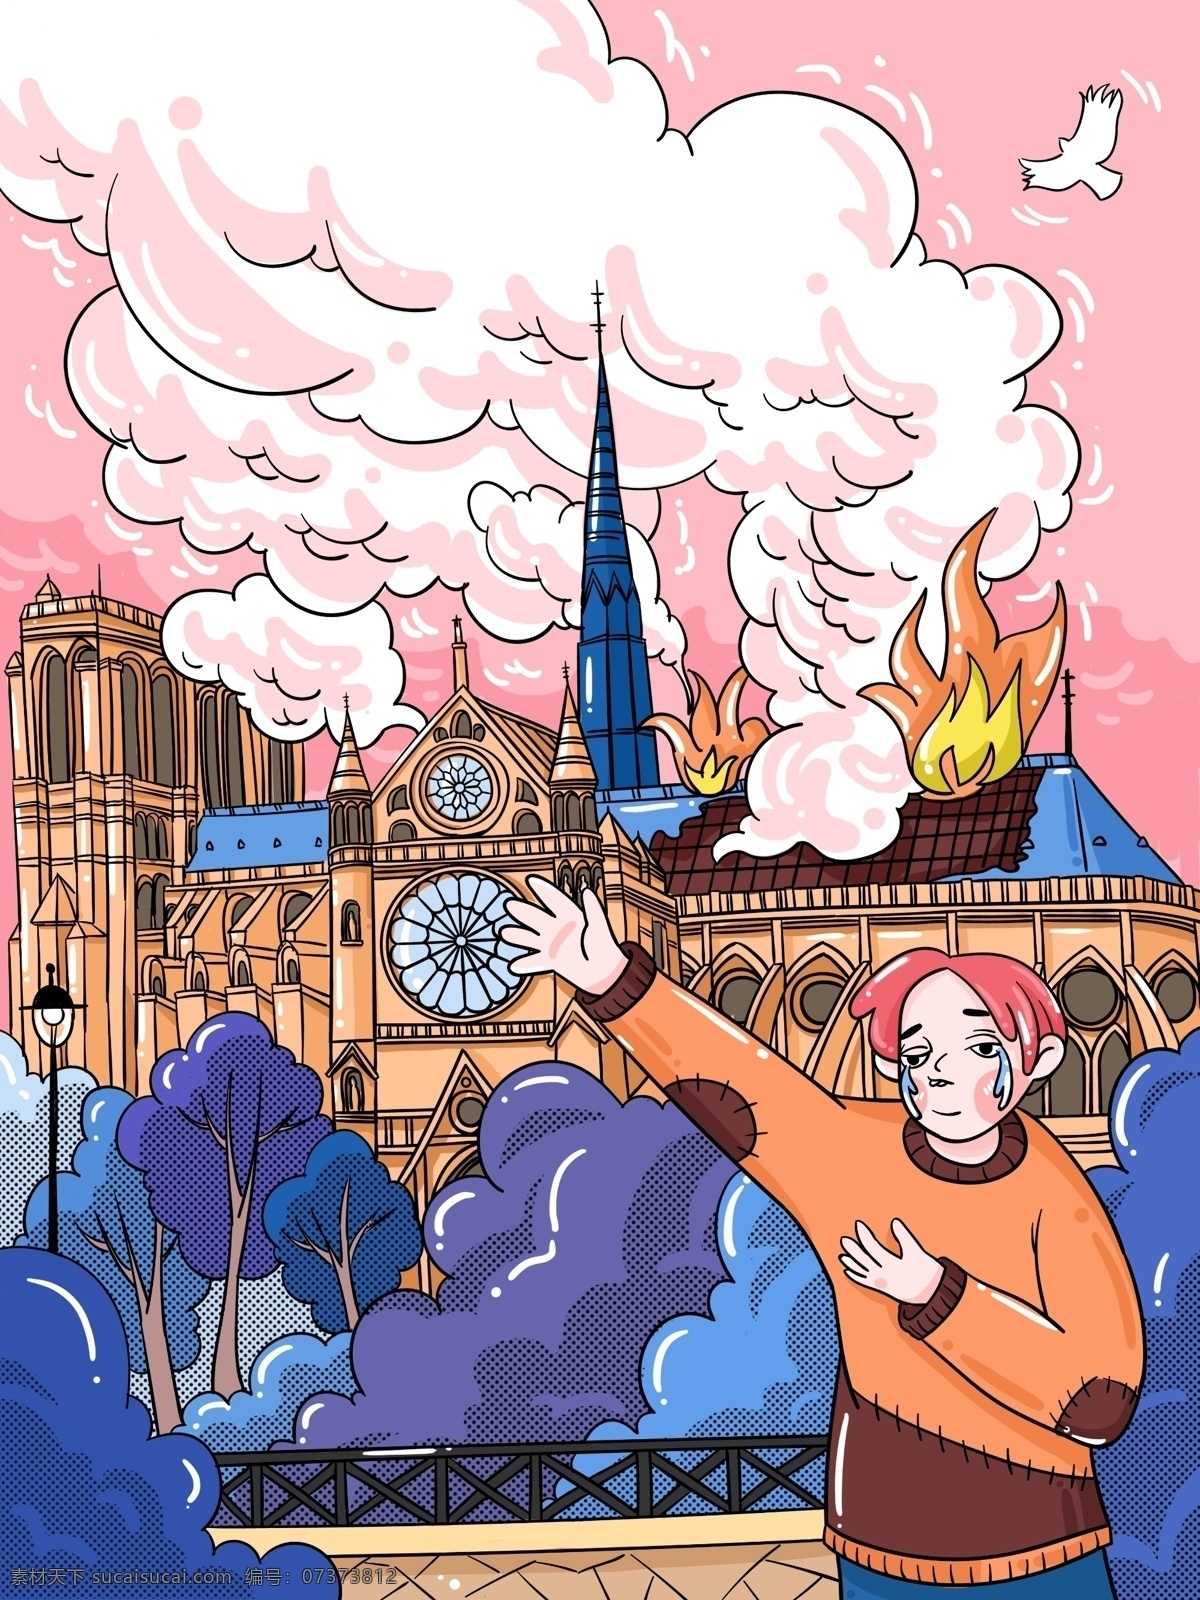 巴黎圣母院 失火 惋惜 卡西莫 钟楼 插画 教堂 火灾 卡西莫多